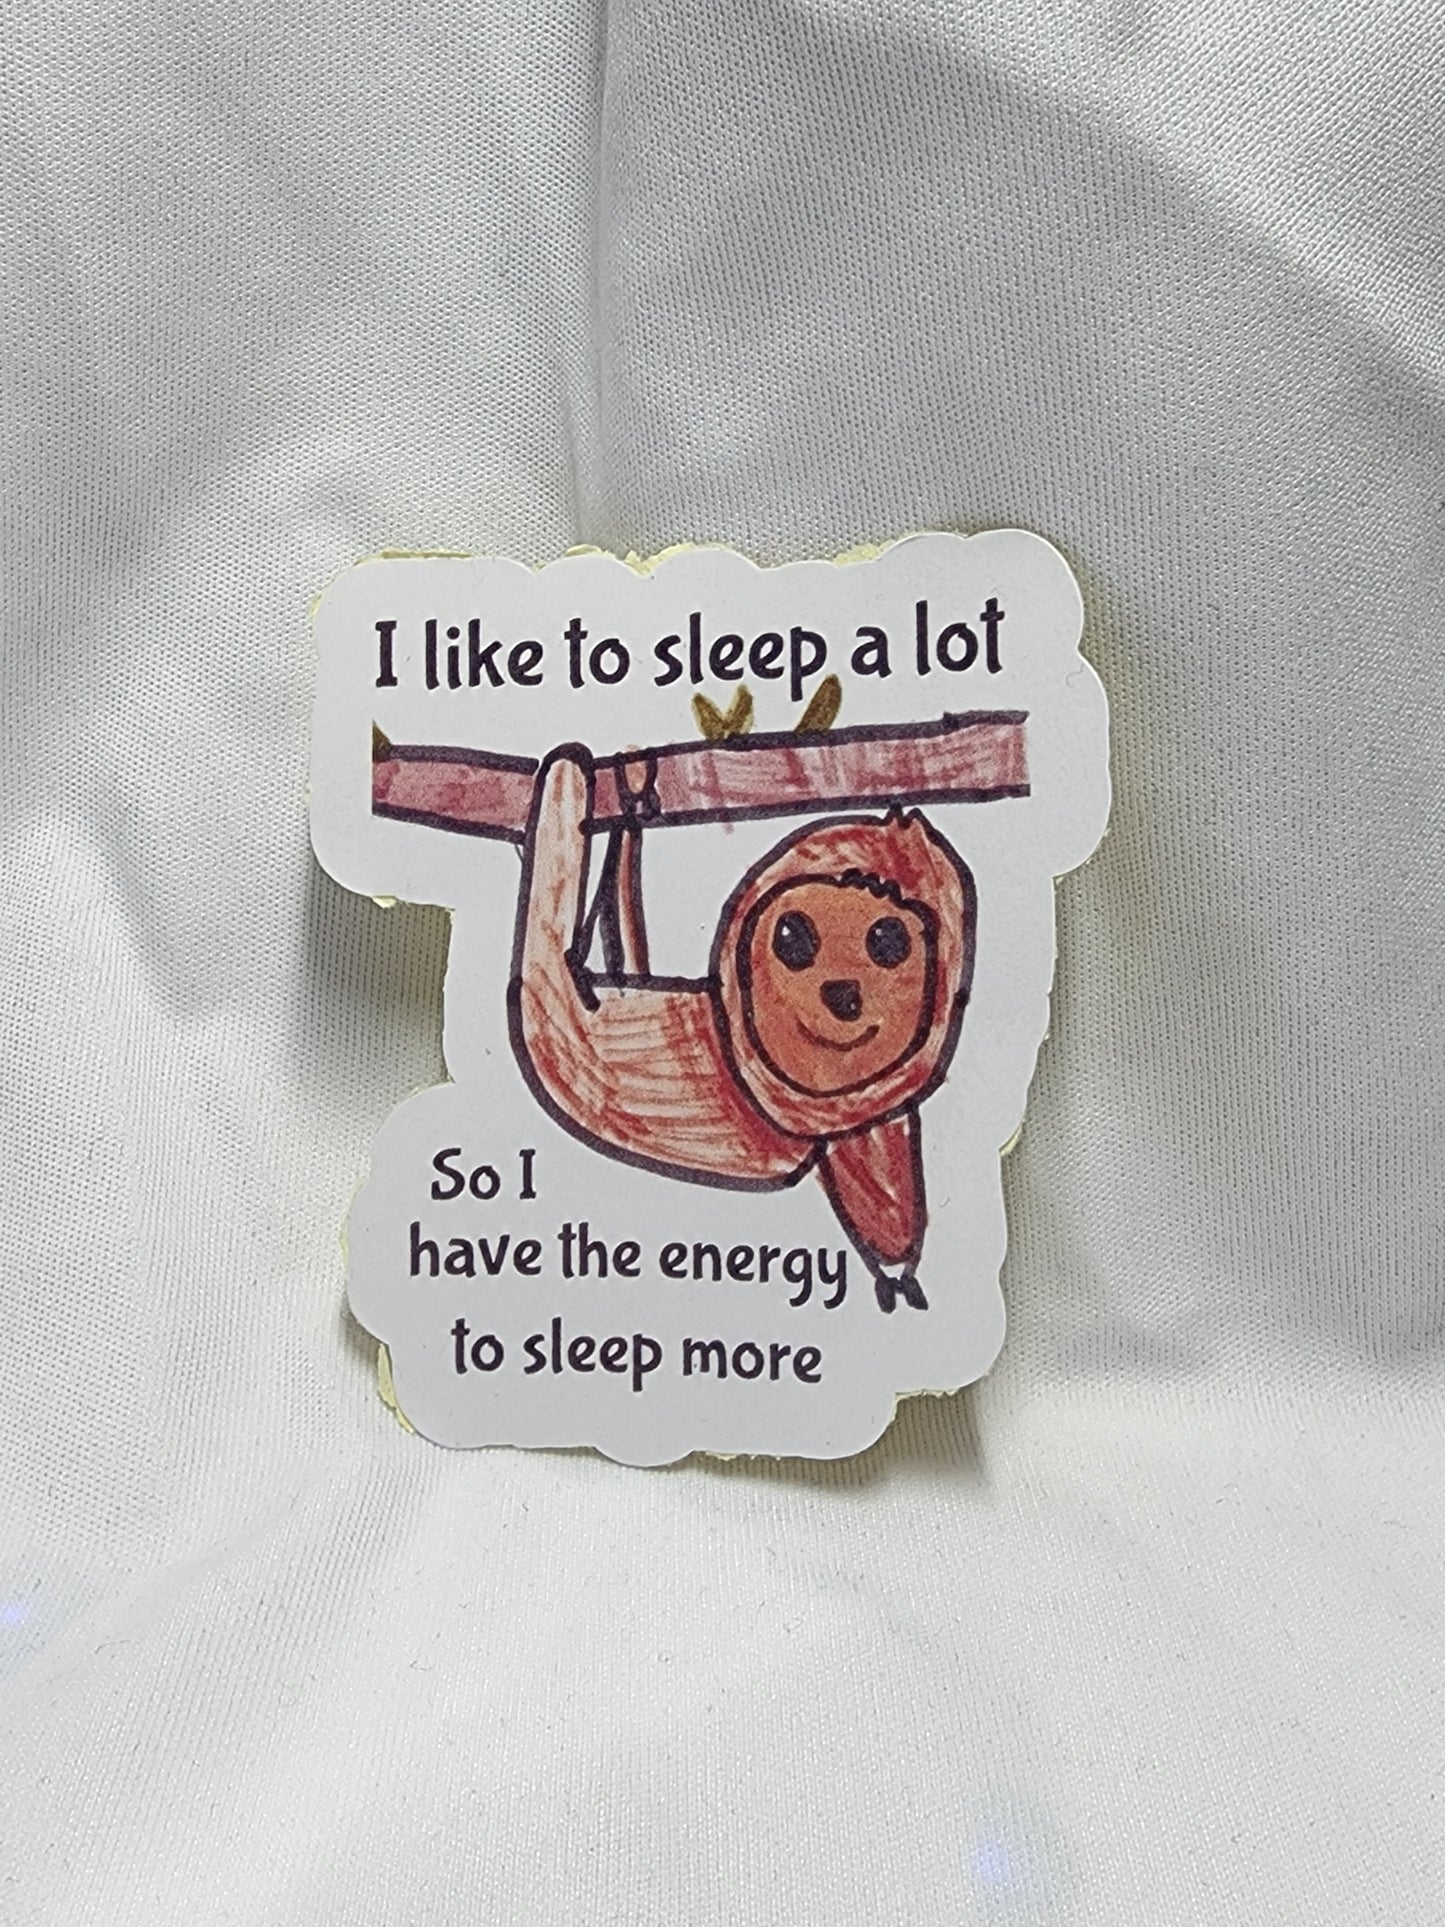 Sleepy sloth sticker